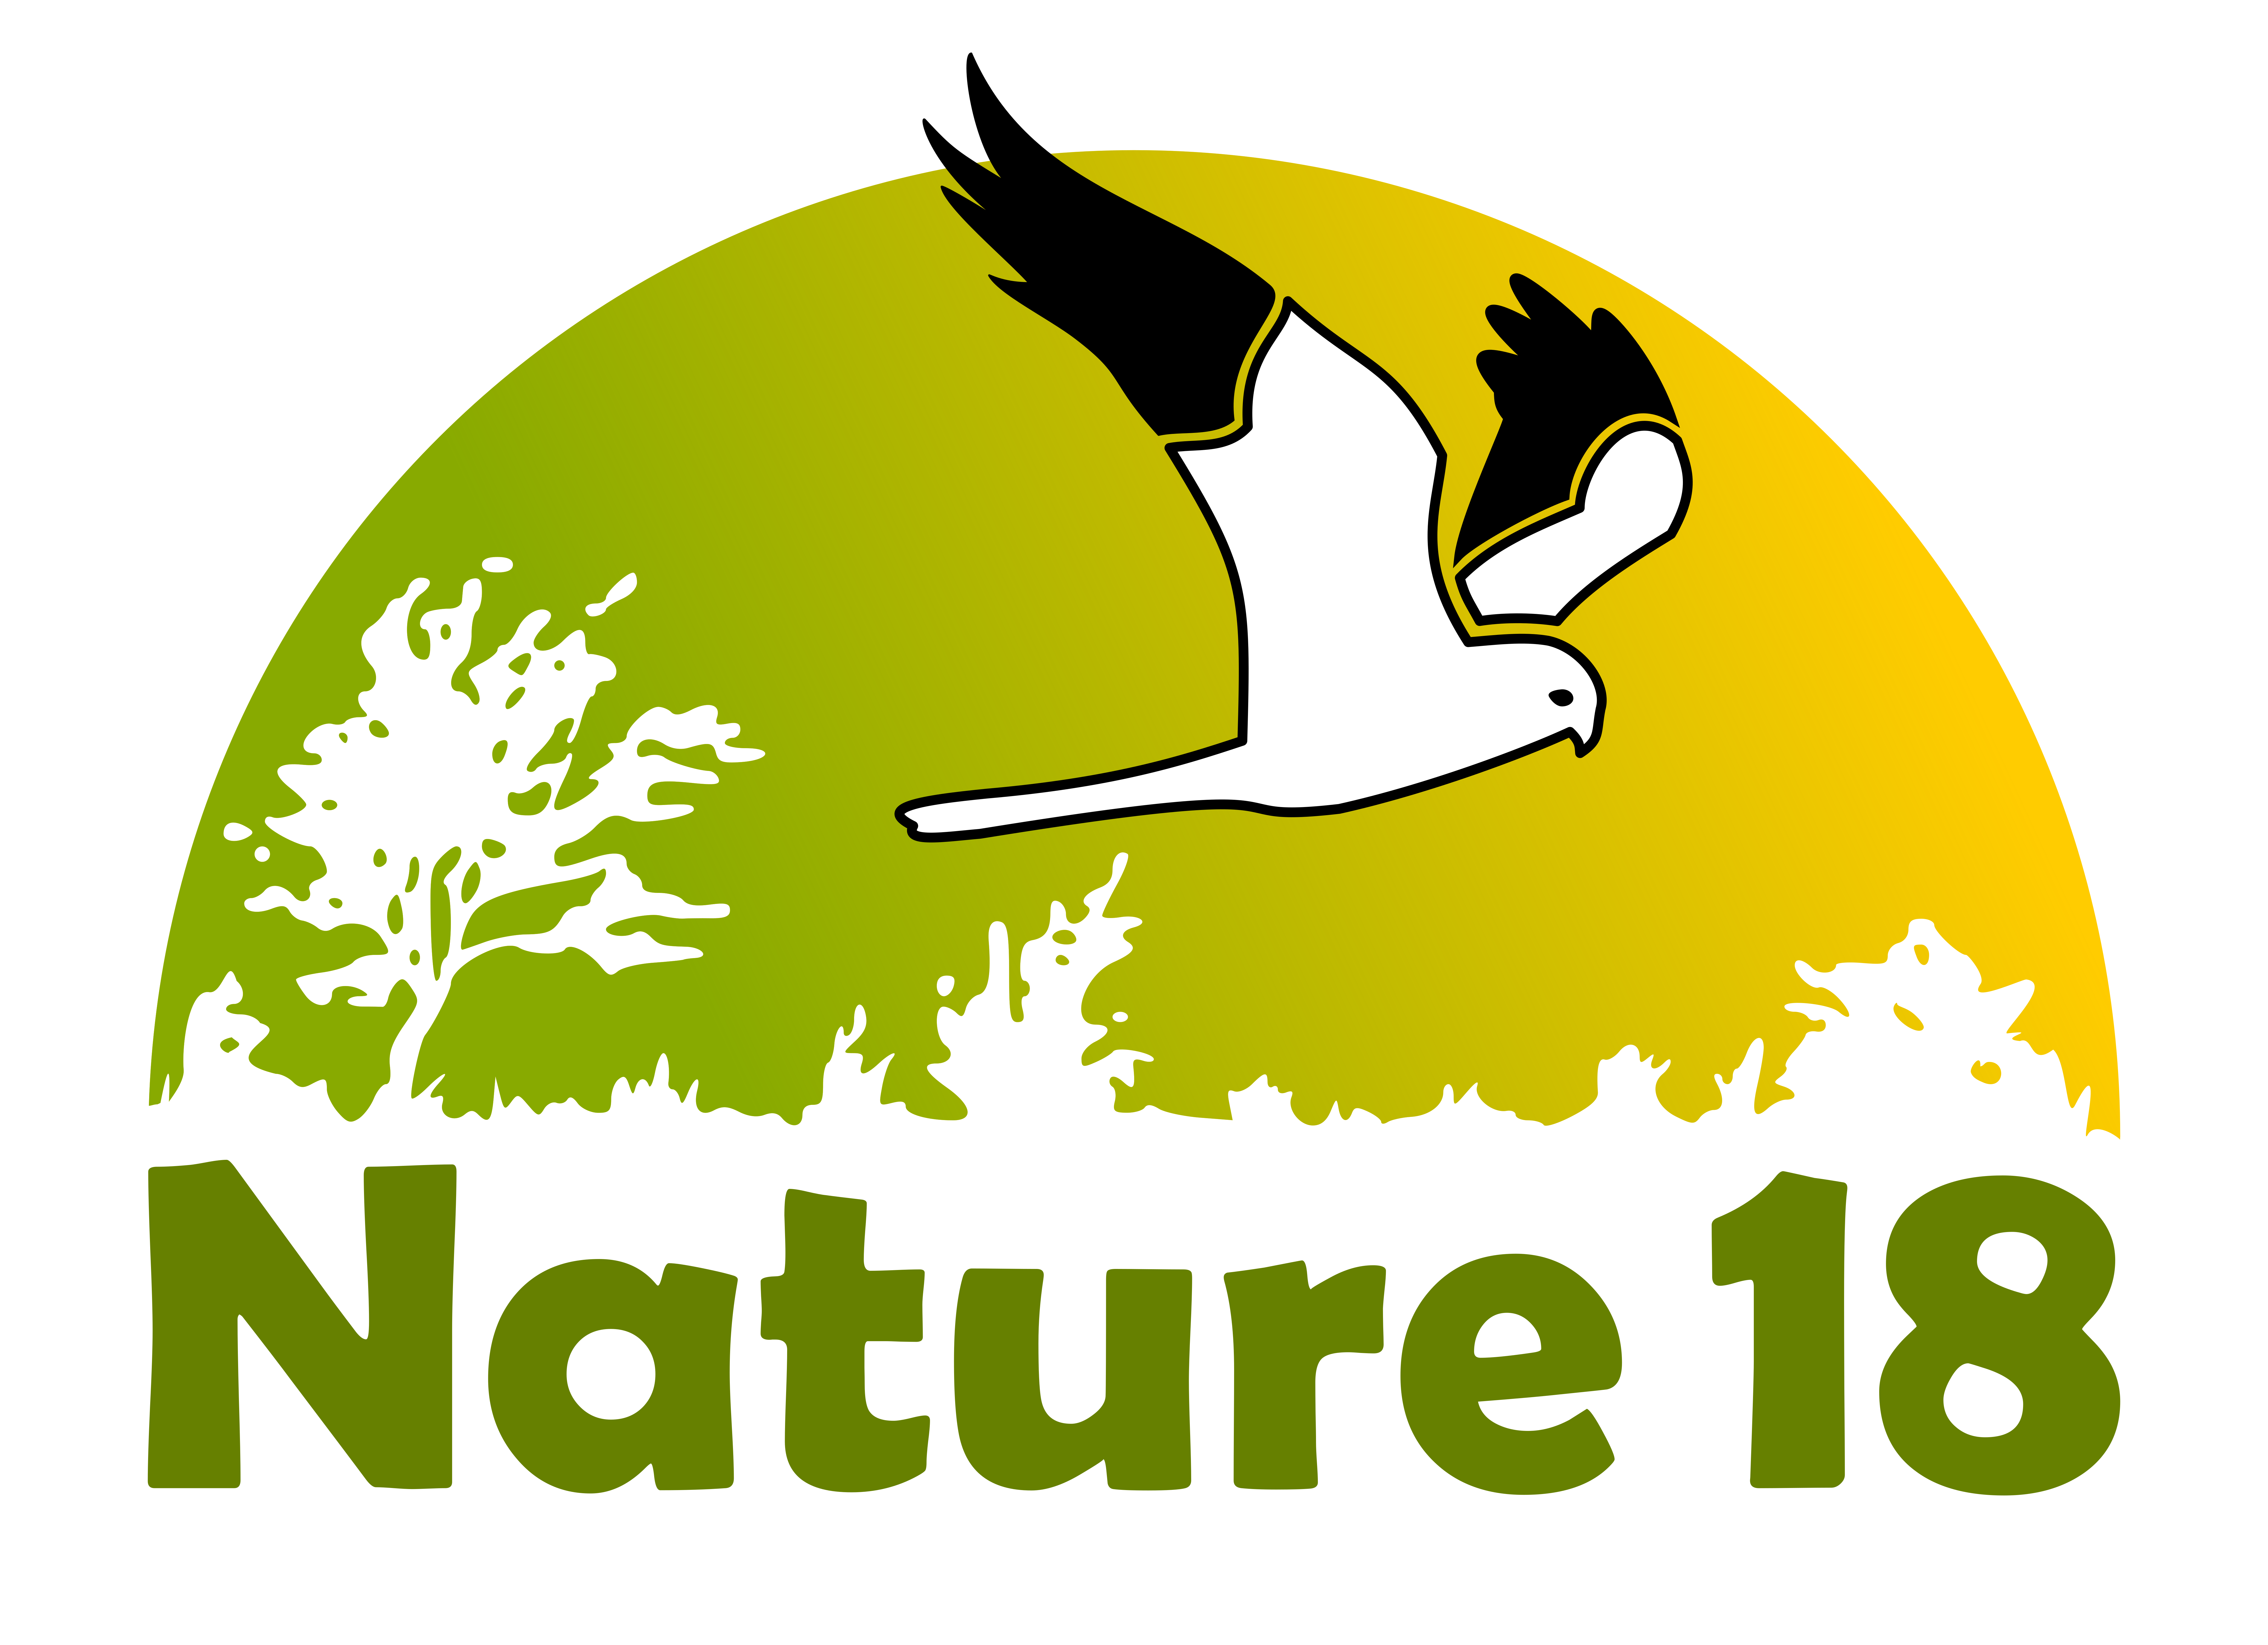 Inventaire de la biodiversité communale : observons les oiseaux de nos jardins jusqu’au 30 janvier